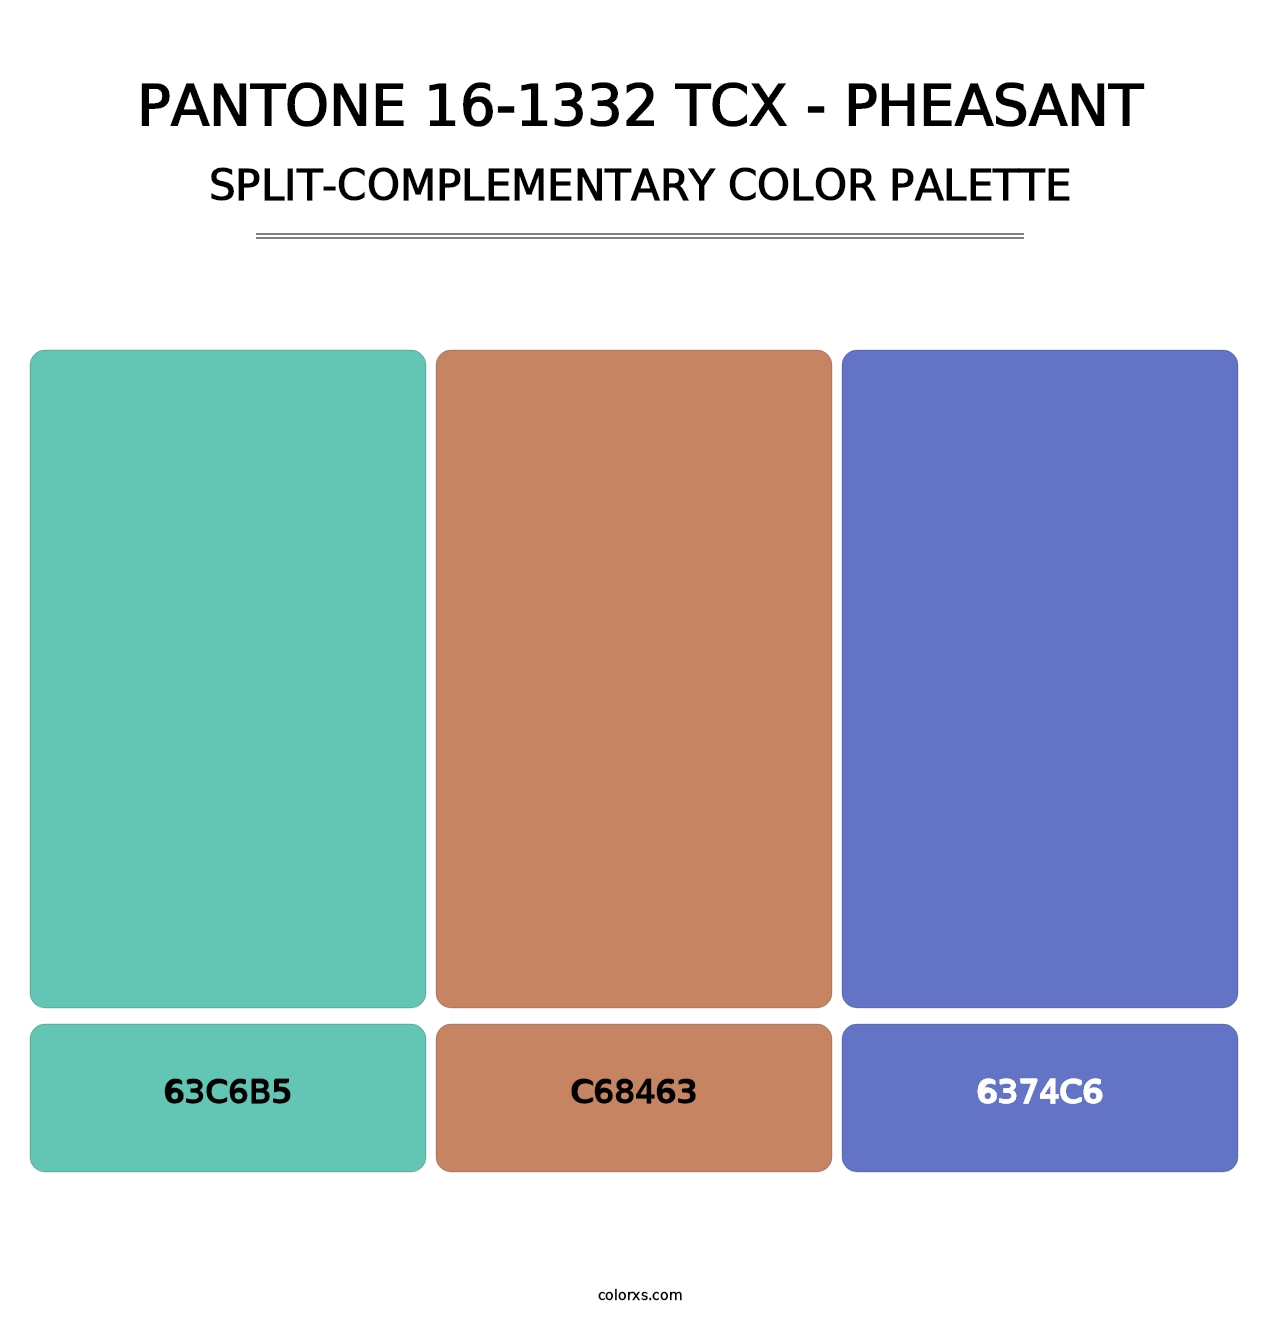 PANTONE 16-1332 TCX - Pheasant - Split-Complementary Color Palette